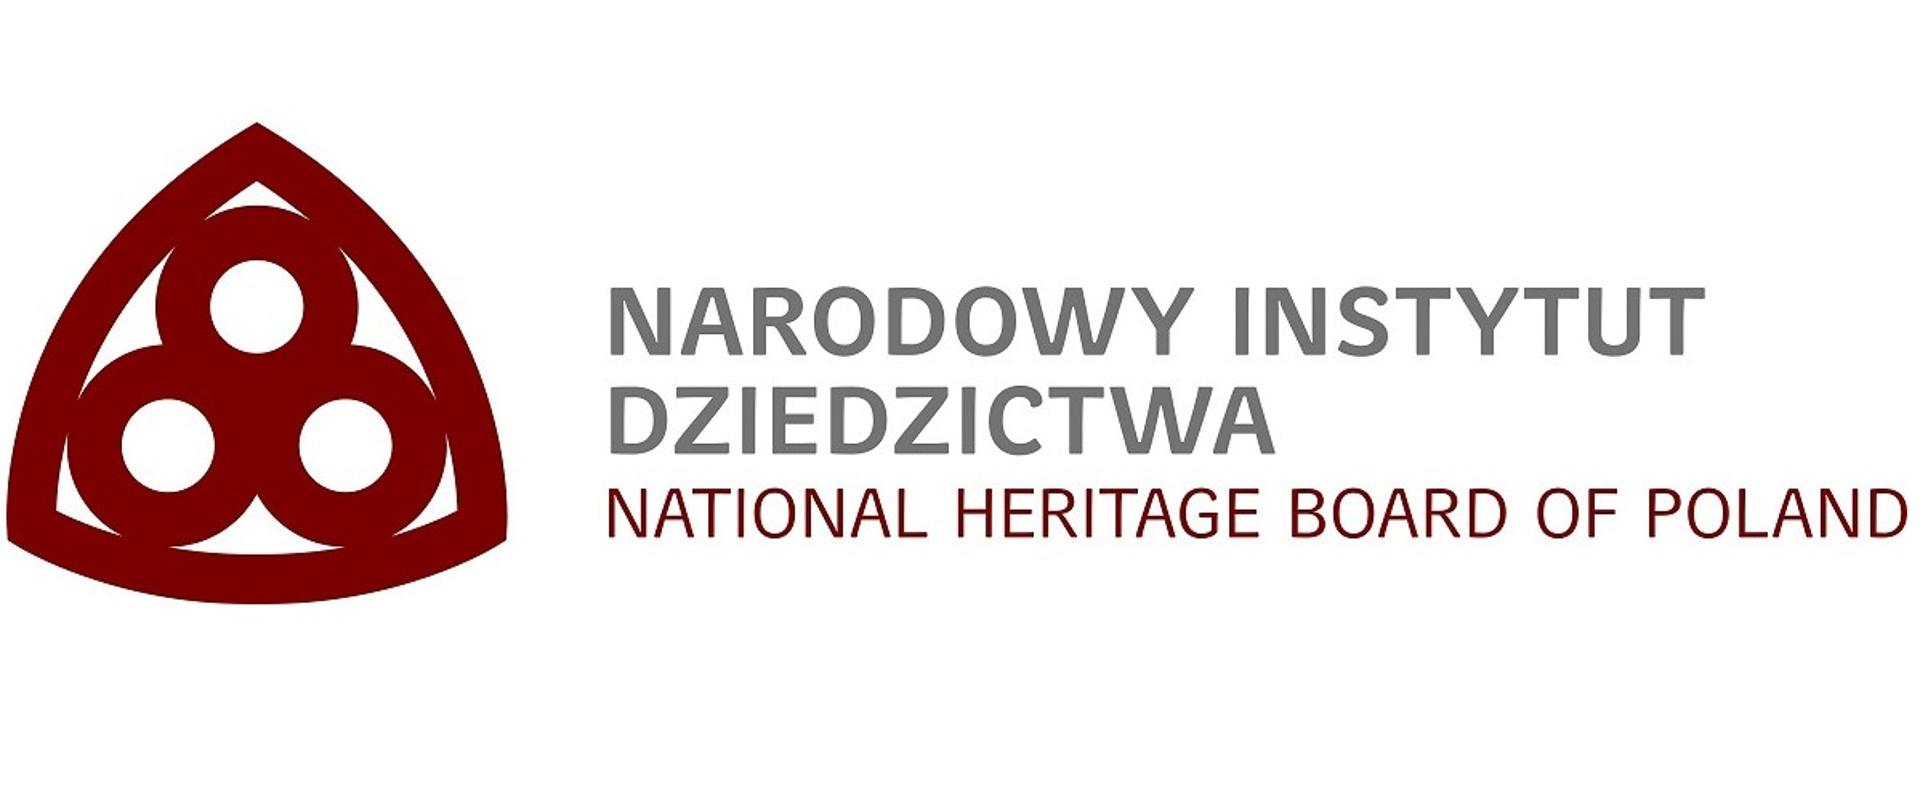 Logo Narodowego Instytutu Dziedzictwa. Znak: trzy stykające się koła wewnątrz figury przypominającej trójkąt. Obok napis: Narodowy Instytut Dziedzictwa.